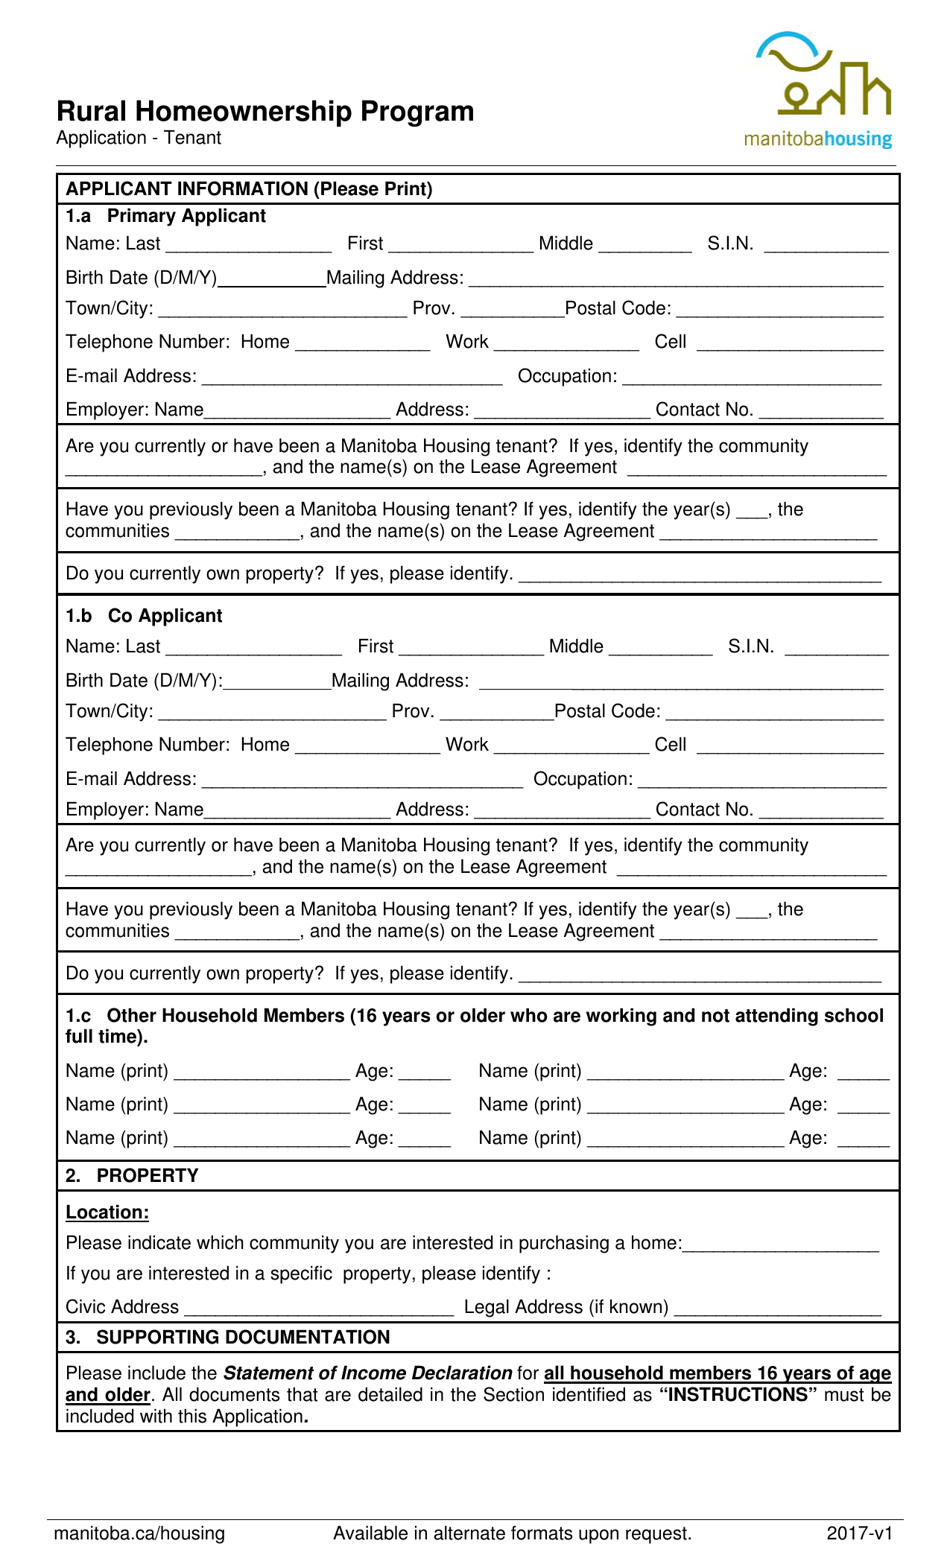 Application - Tenant - Rural Homeownership Program - Manitoba, Canada, Page 1